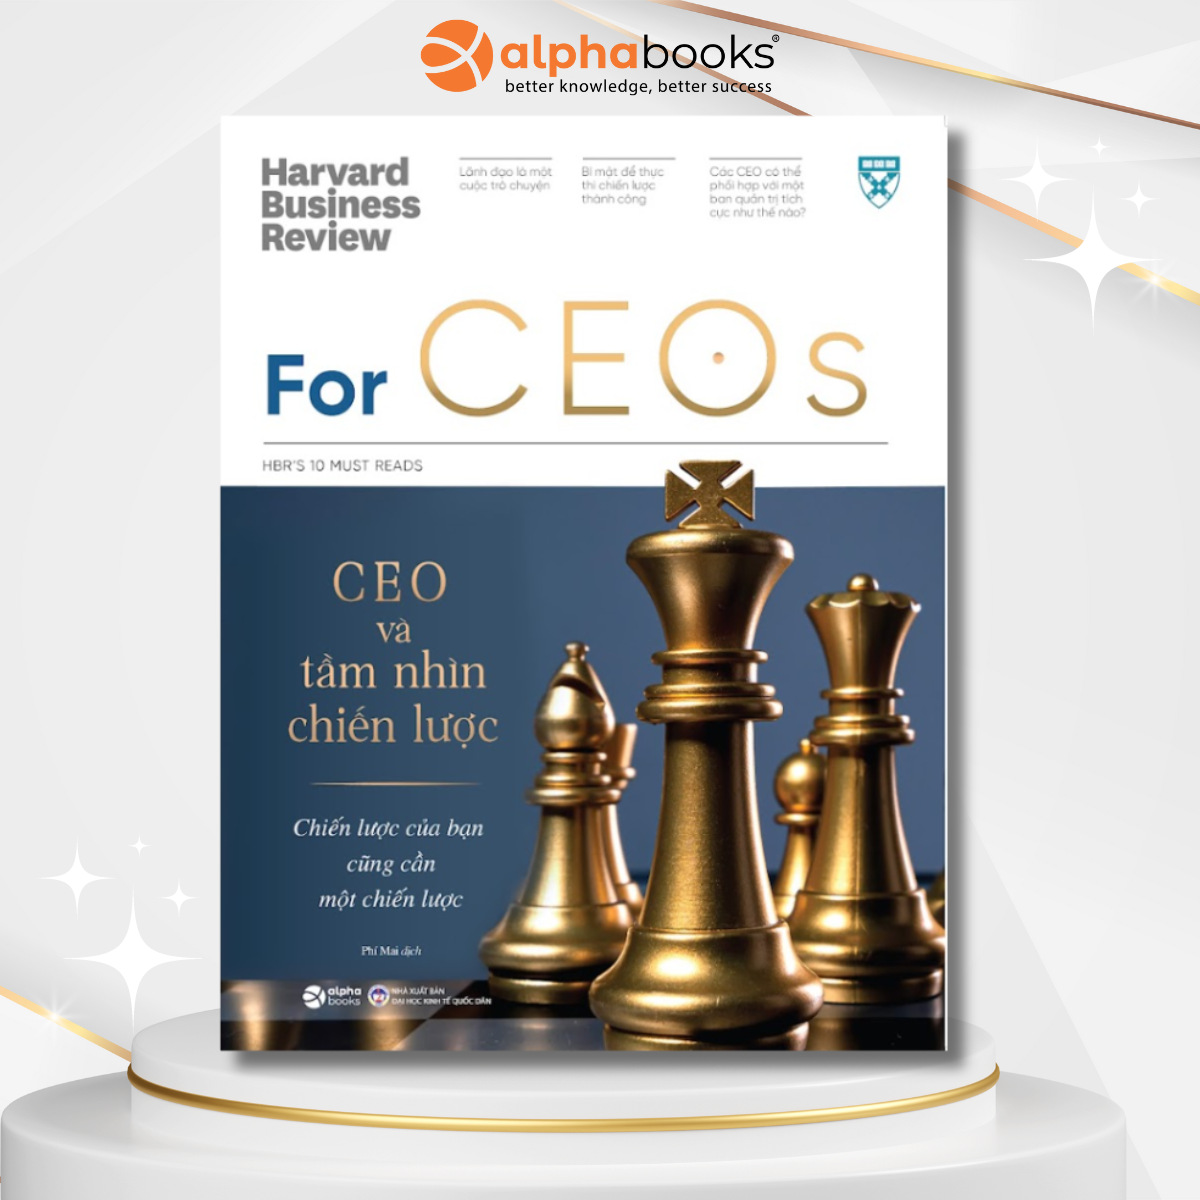 HBR's 10 Must Reads For CEOs: CEO Và Tầm Nhìn Chiến Lược